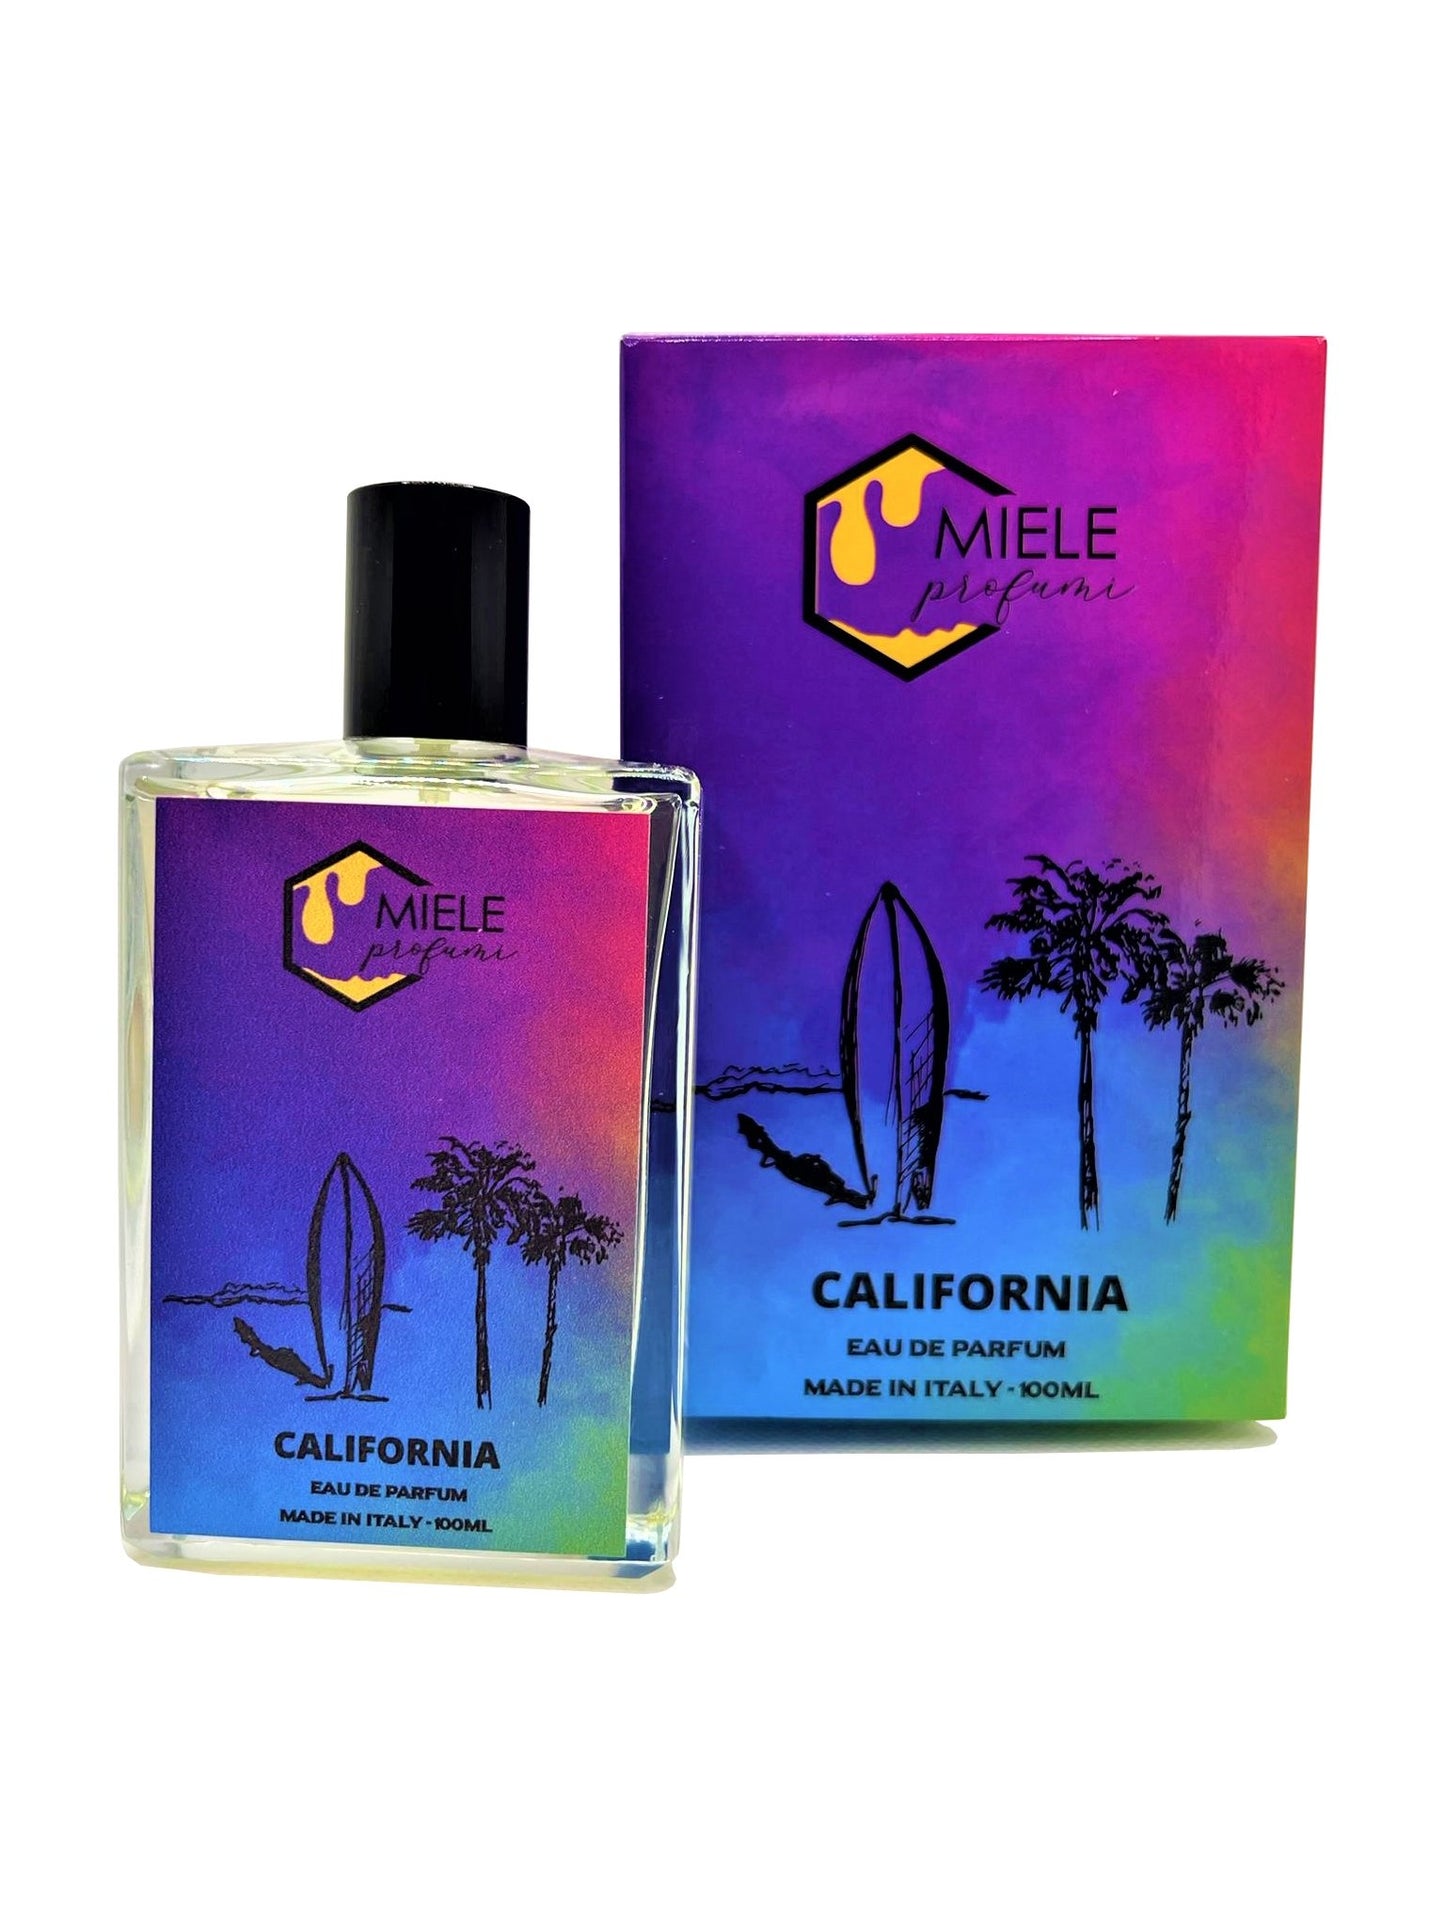 California miele profumi profumo ispirato equivalente a one million  alta persistenza scia fragranza  unisex Made in Italy